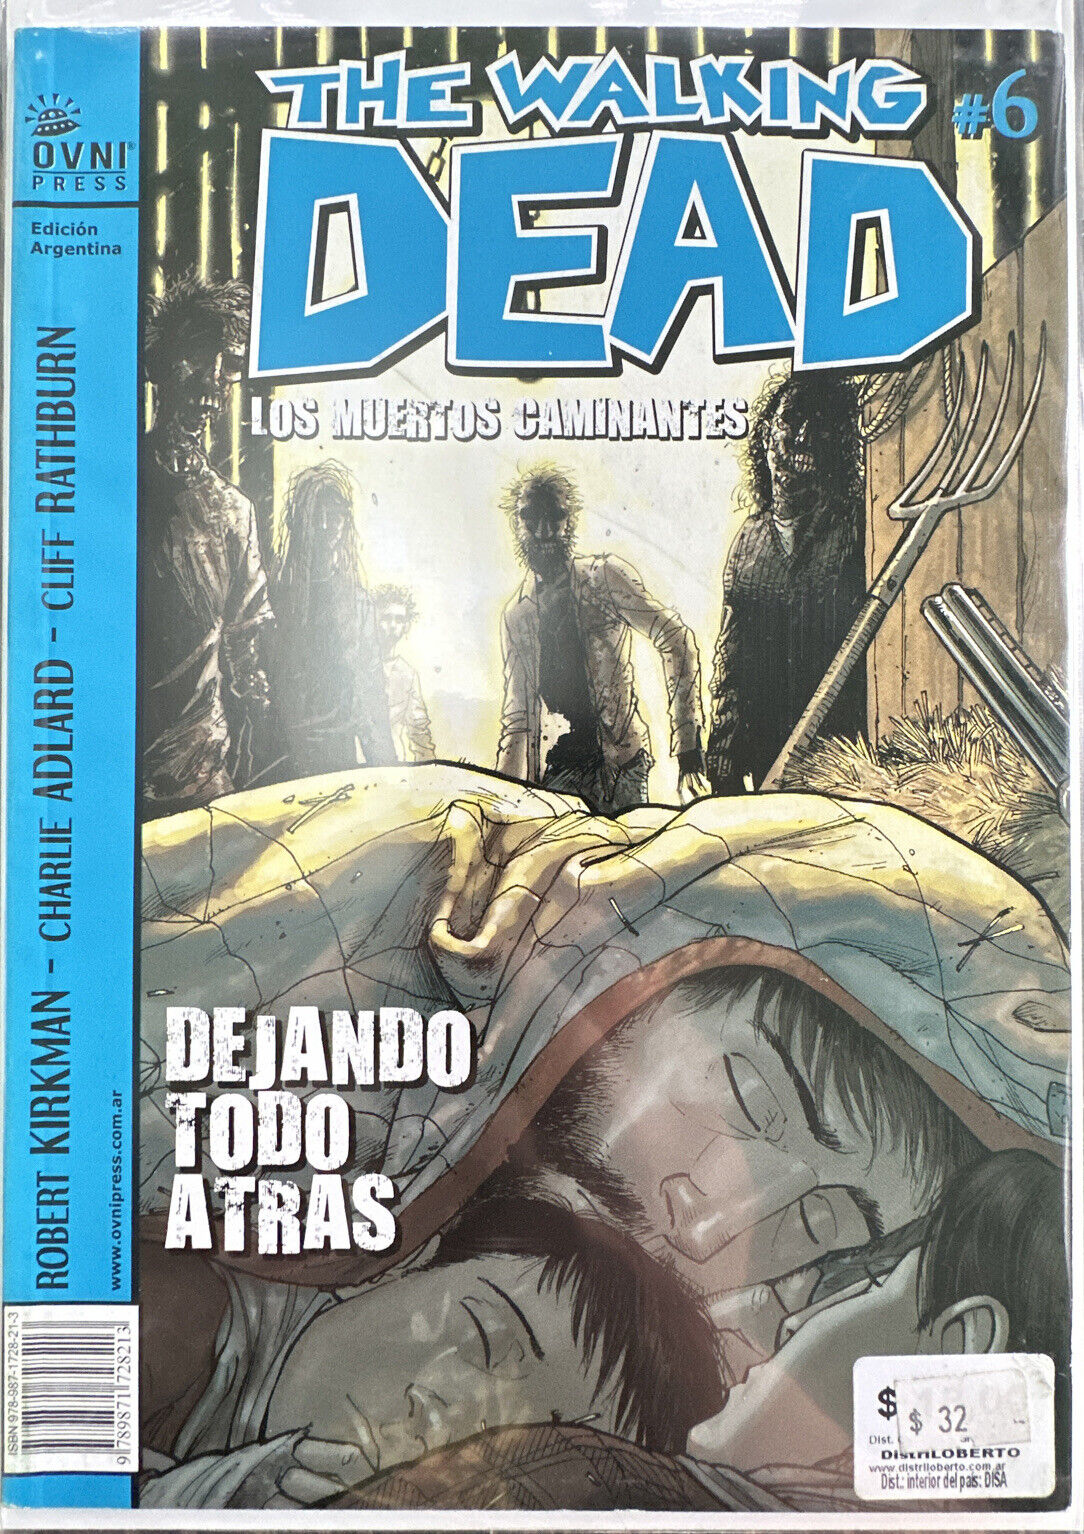 The Walking Dead (Dejando Todo Atras) Issue #6 Argentina Edition (Great Cond.)